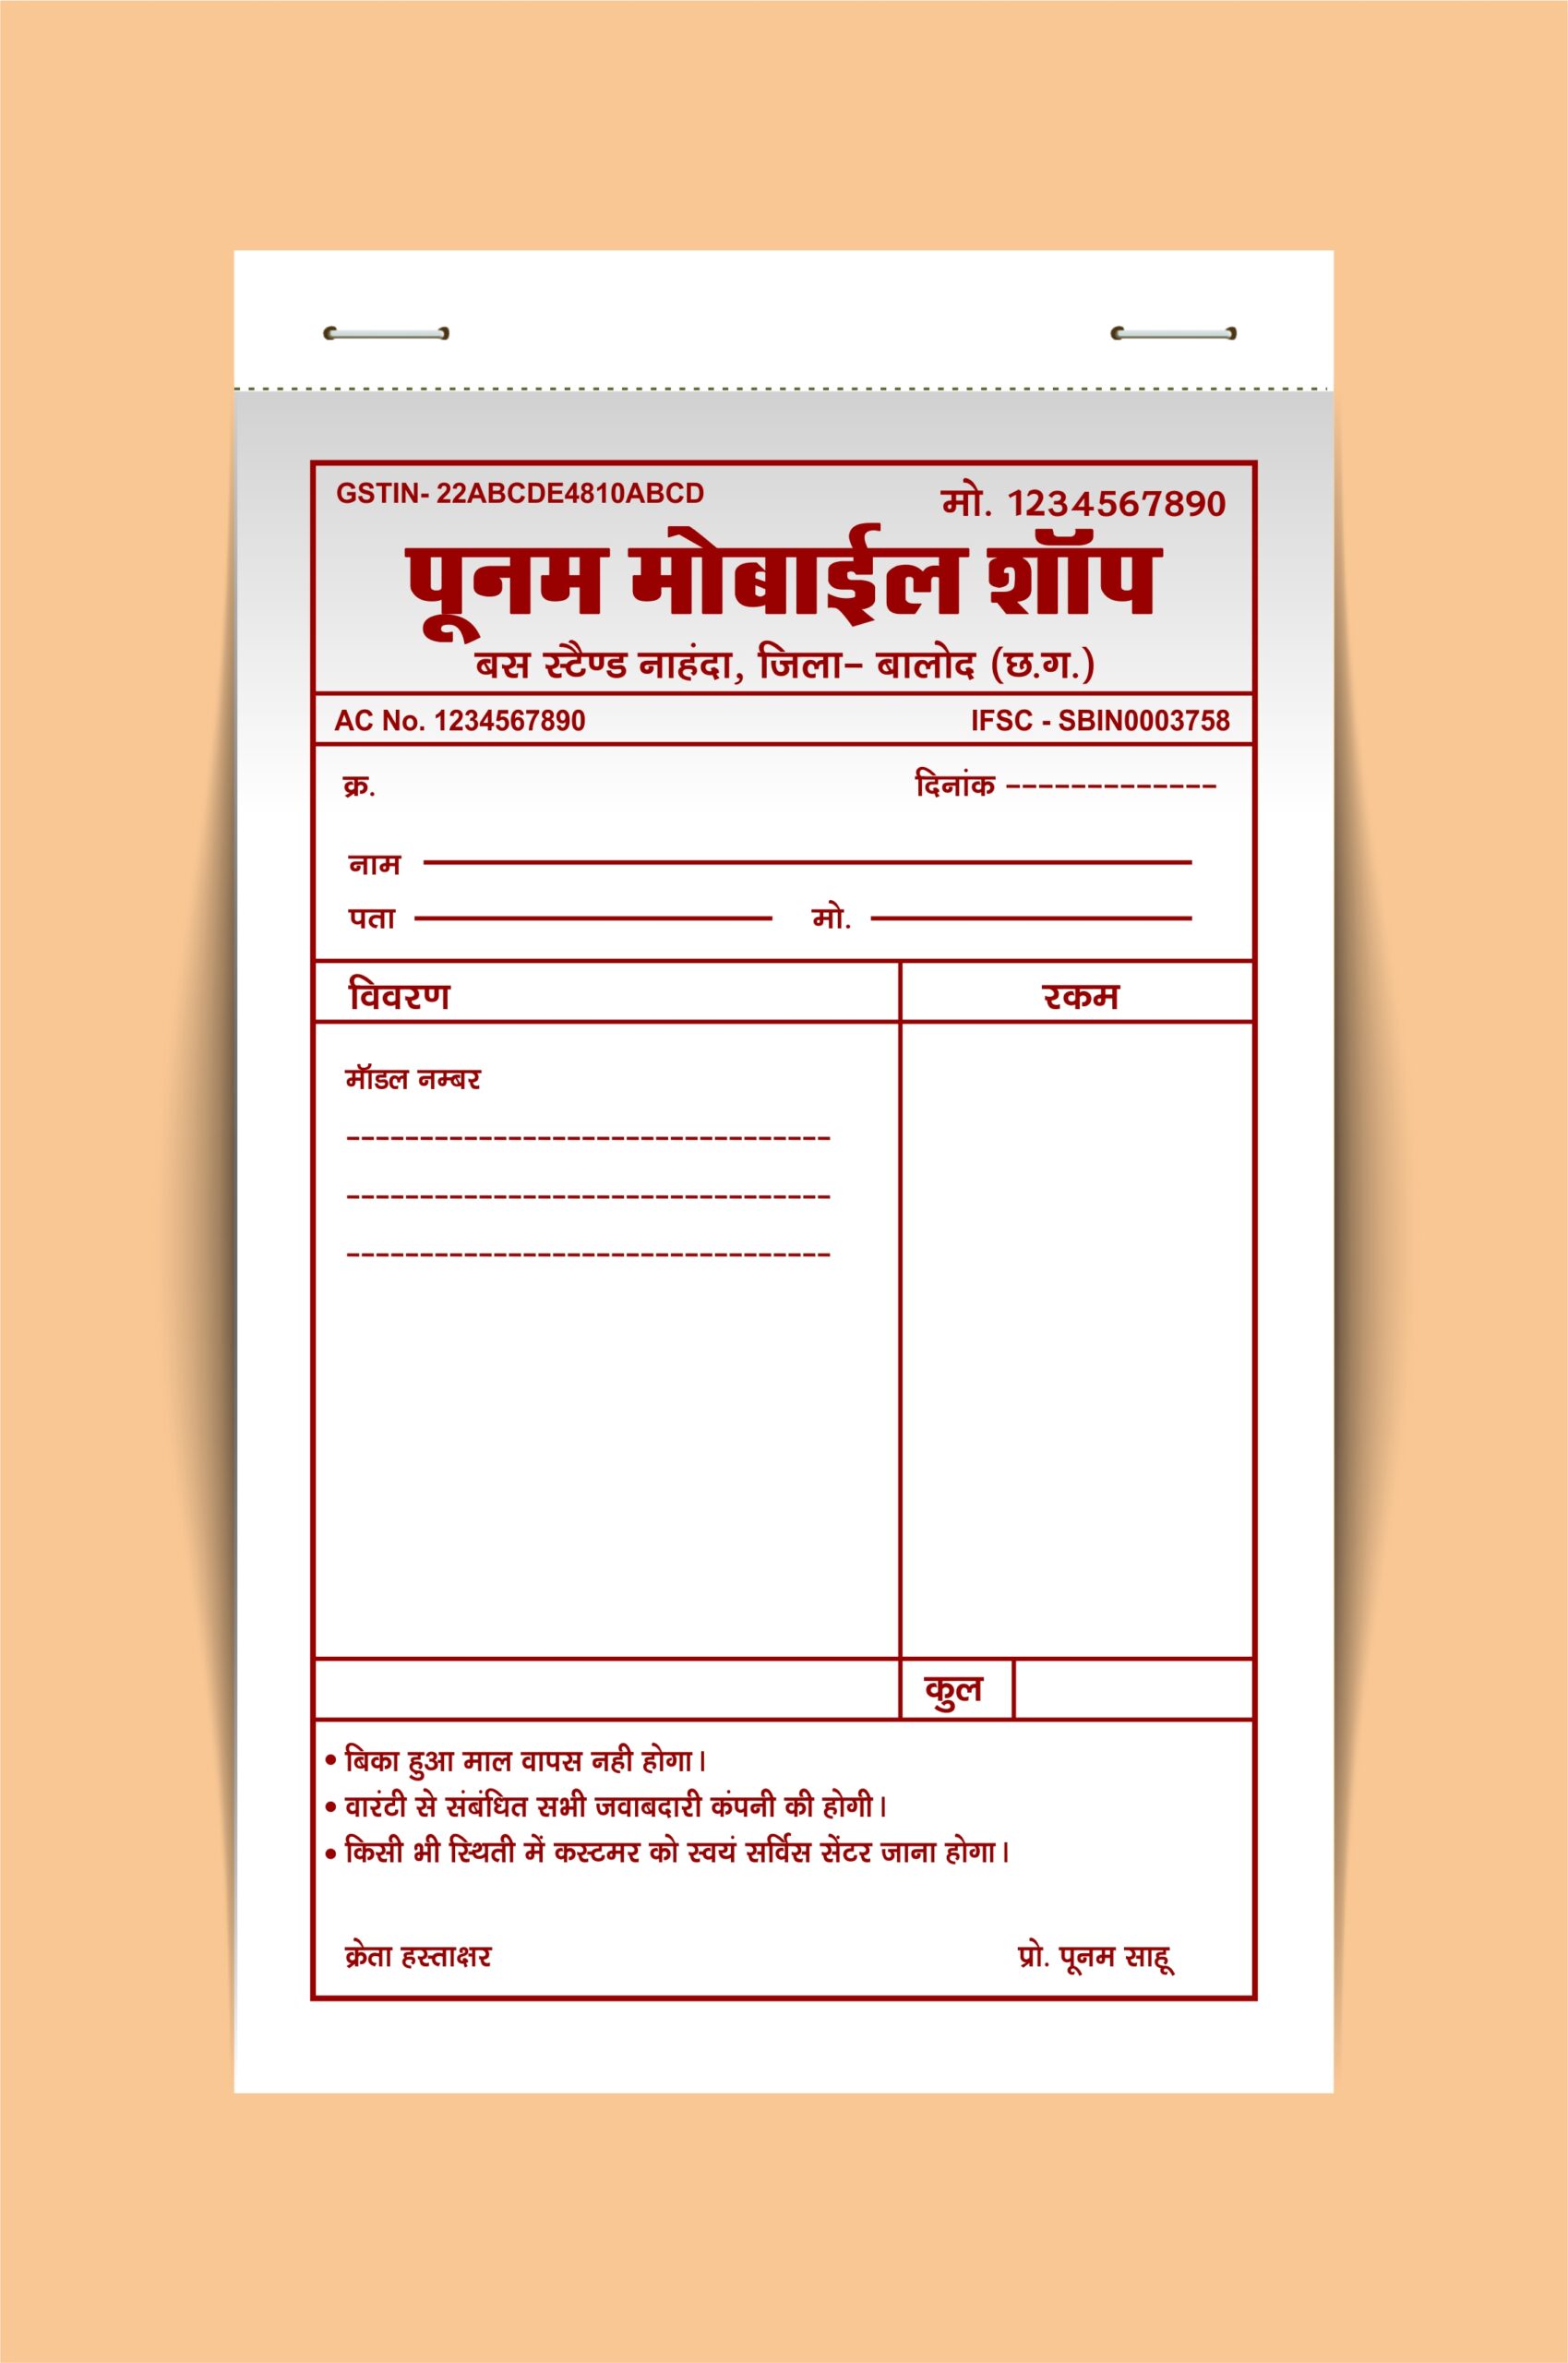 Mobile shop bill book design cdr file free download 260524